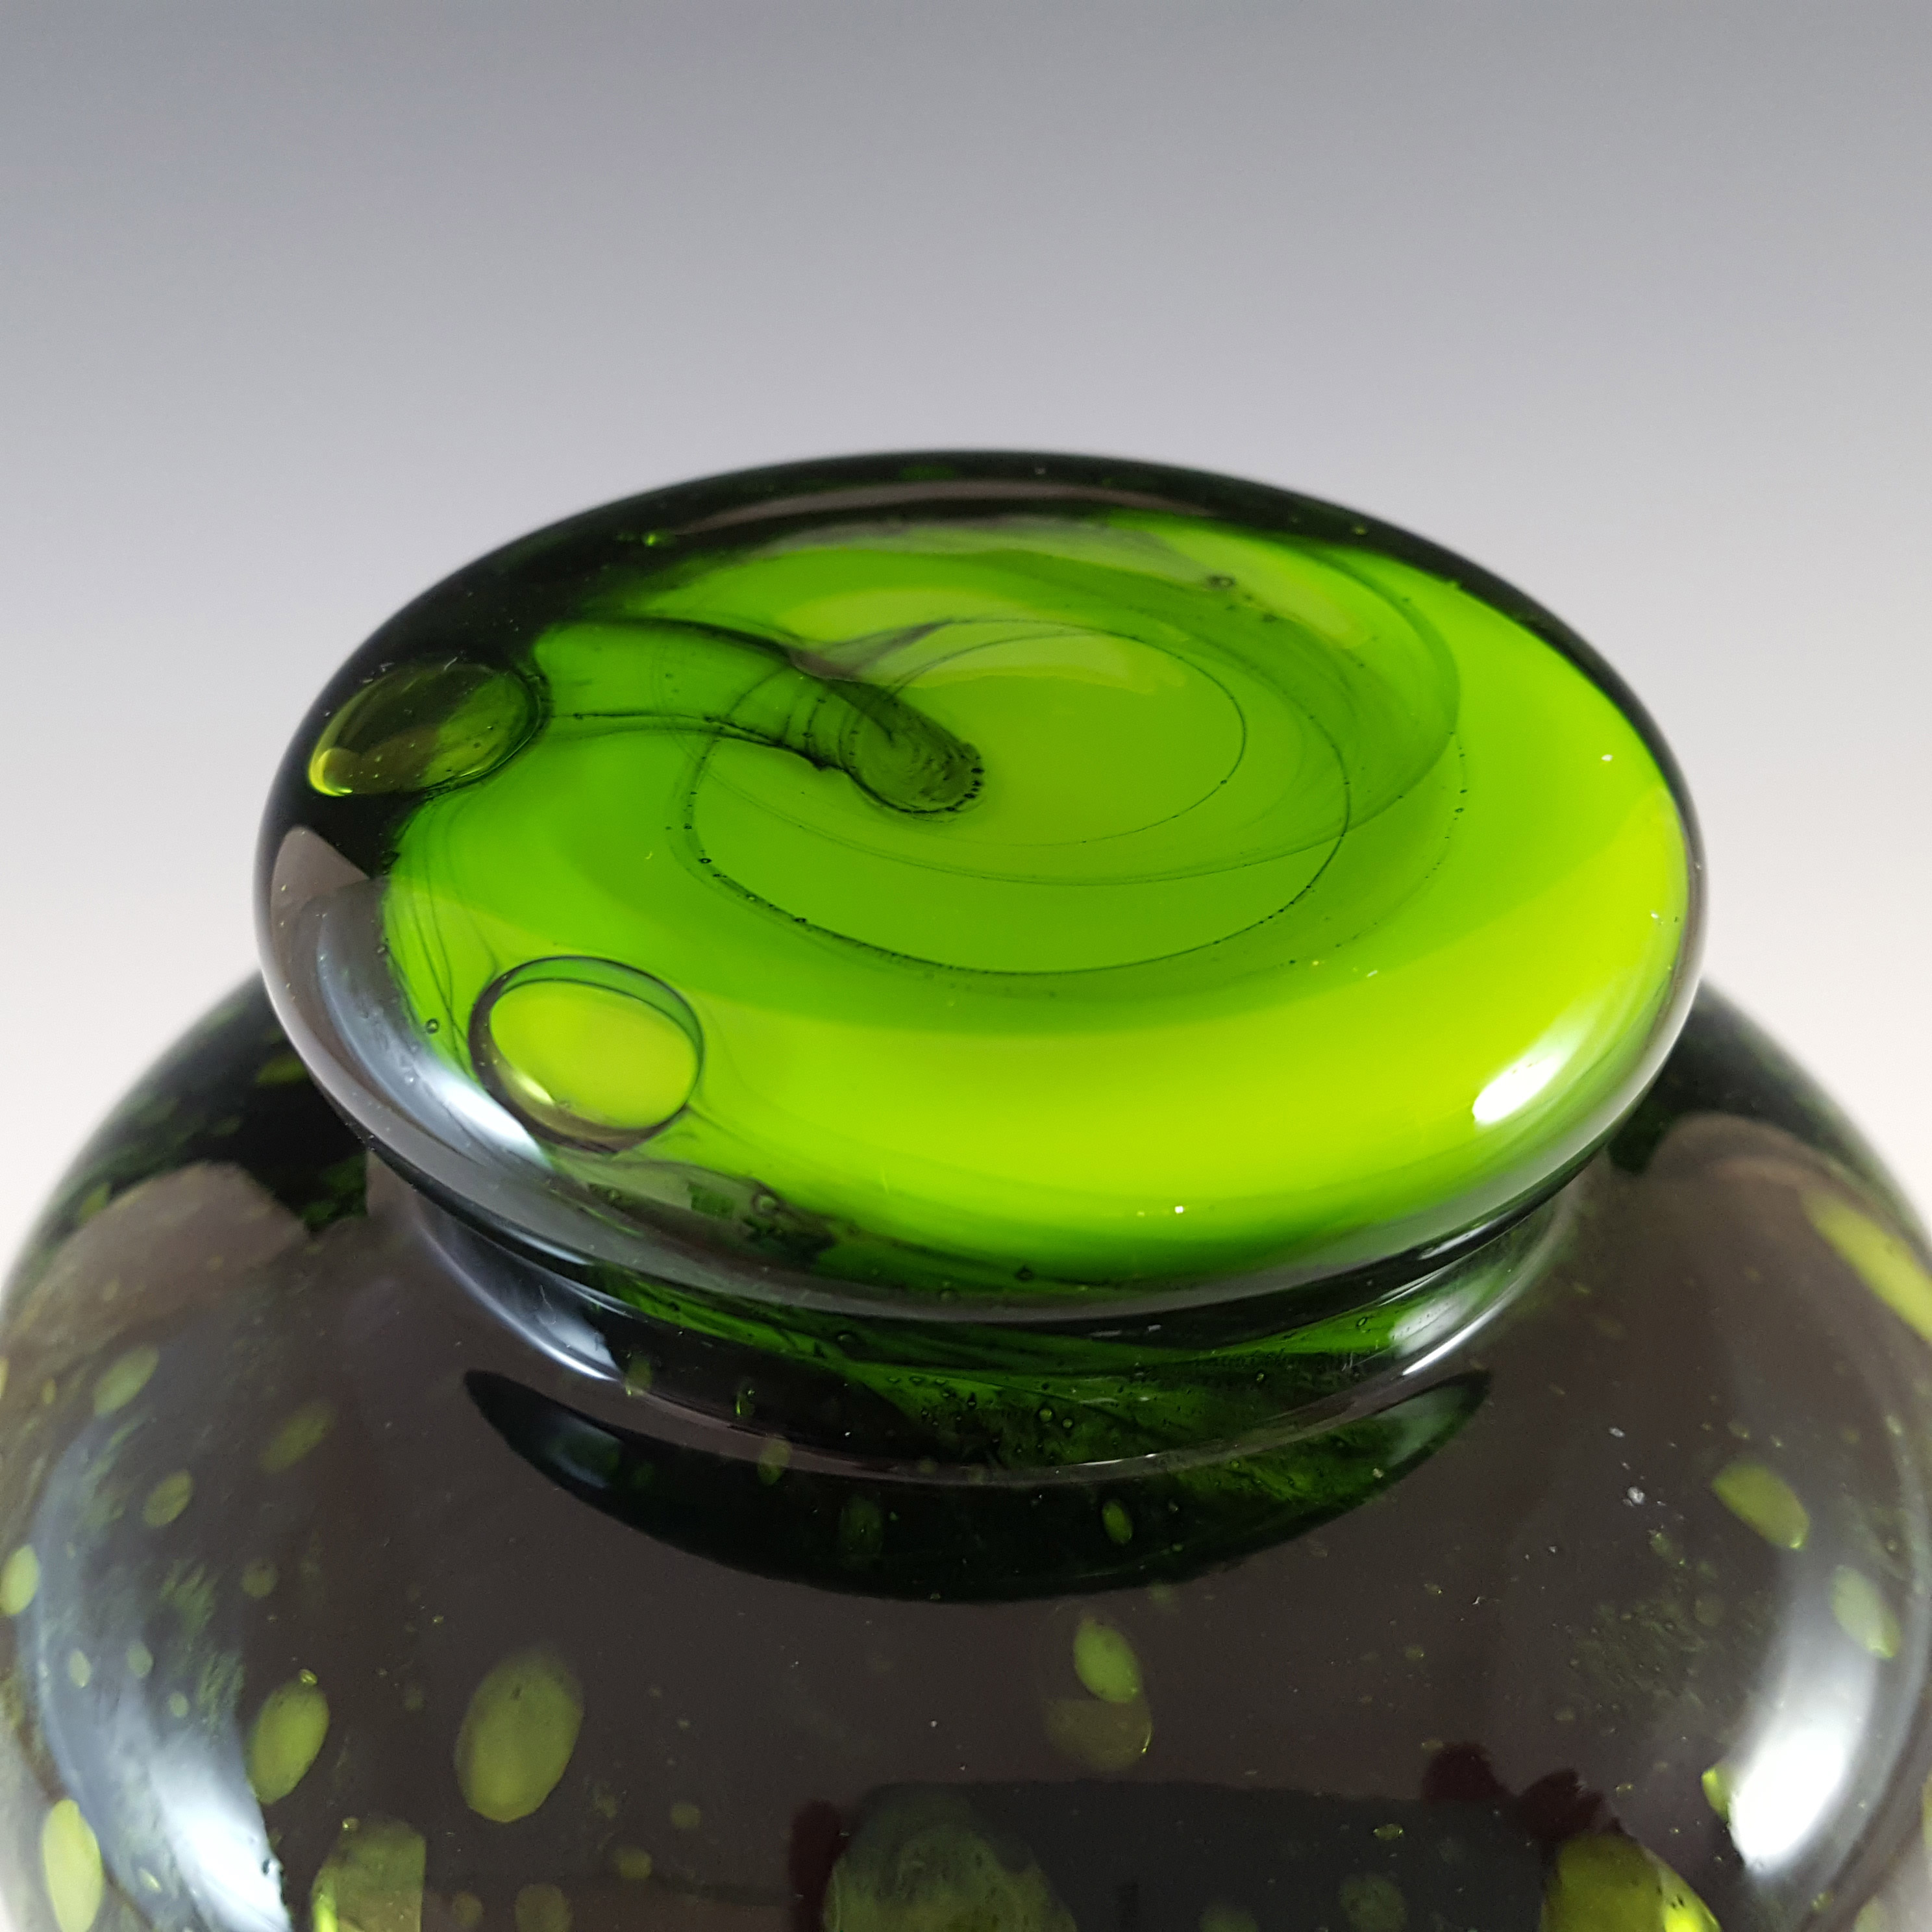 V.B. Opaline Florence Empoli Vintage Green & Black Glass Vase - Click Image to Close